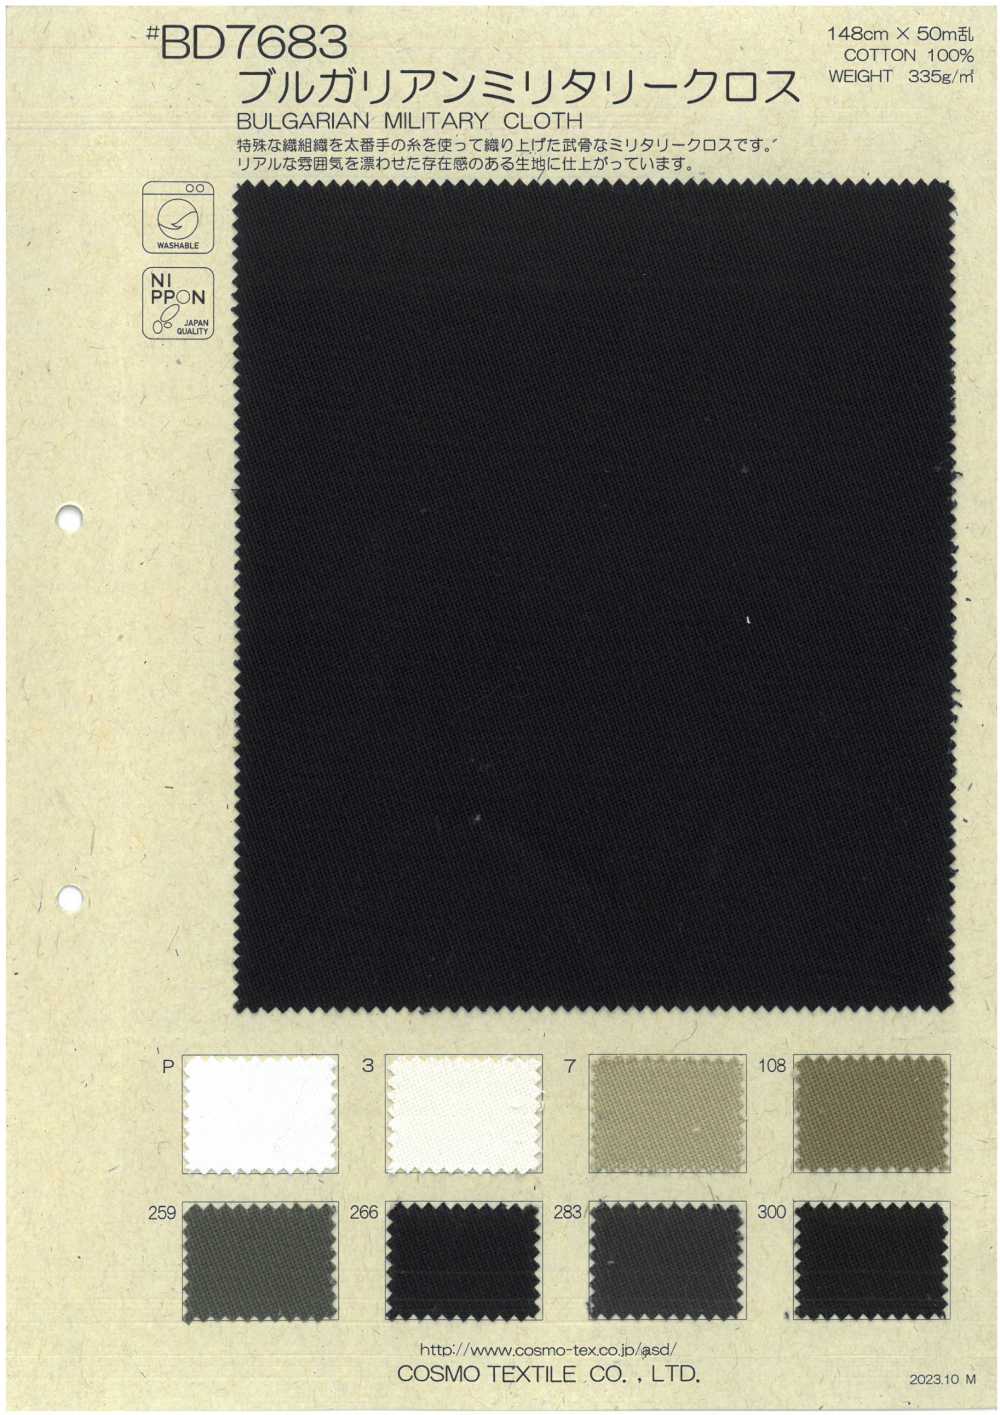 BD7683 Bulgarisches Militärkreuz[Textilgewebe] COSMO TEXTILE